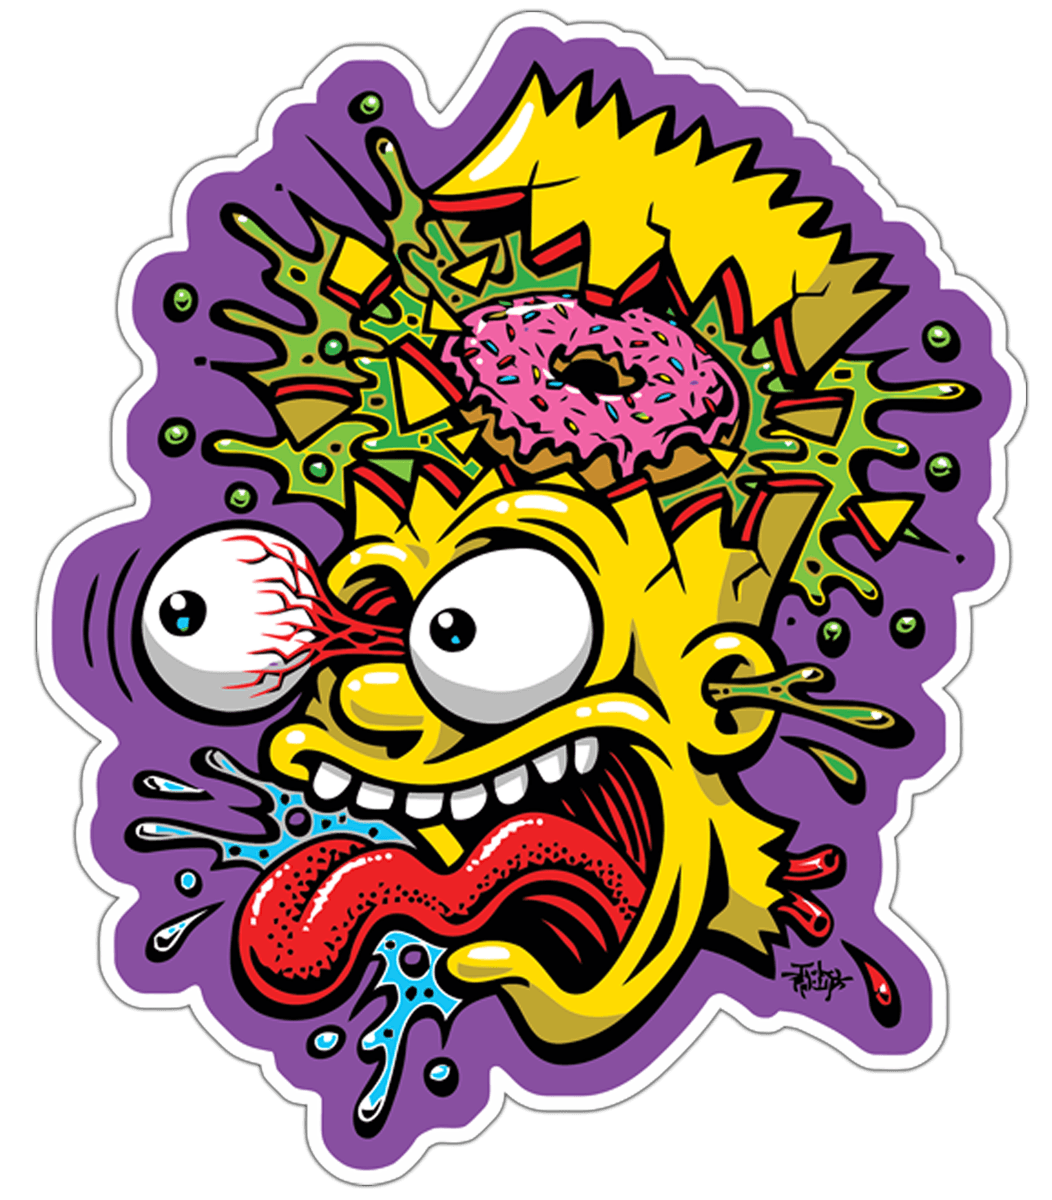 Autocollants: Bart Simpson se décompose